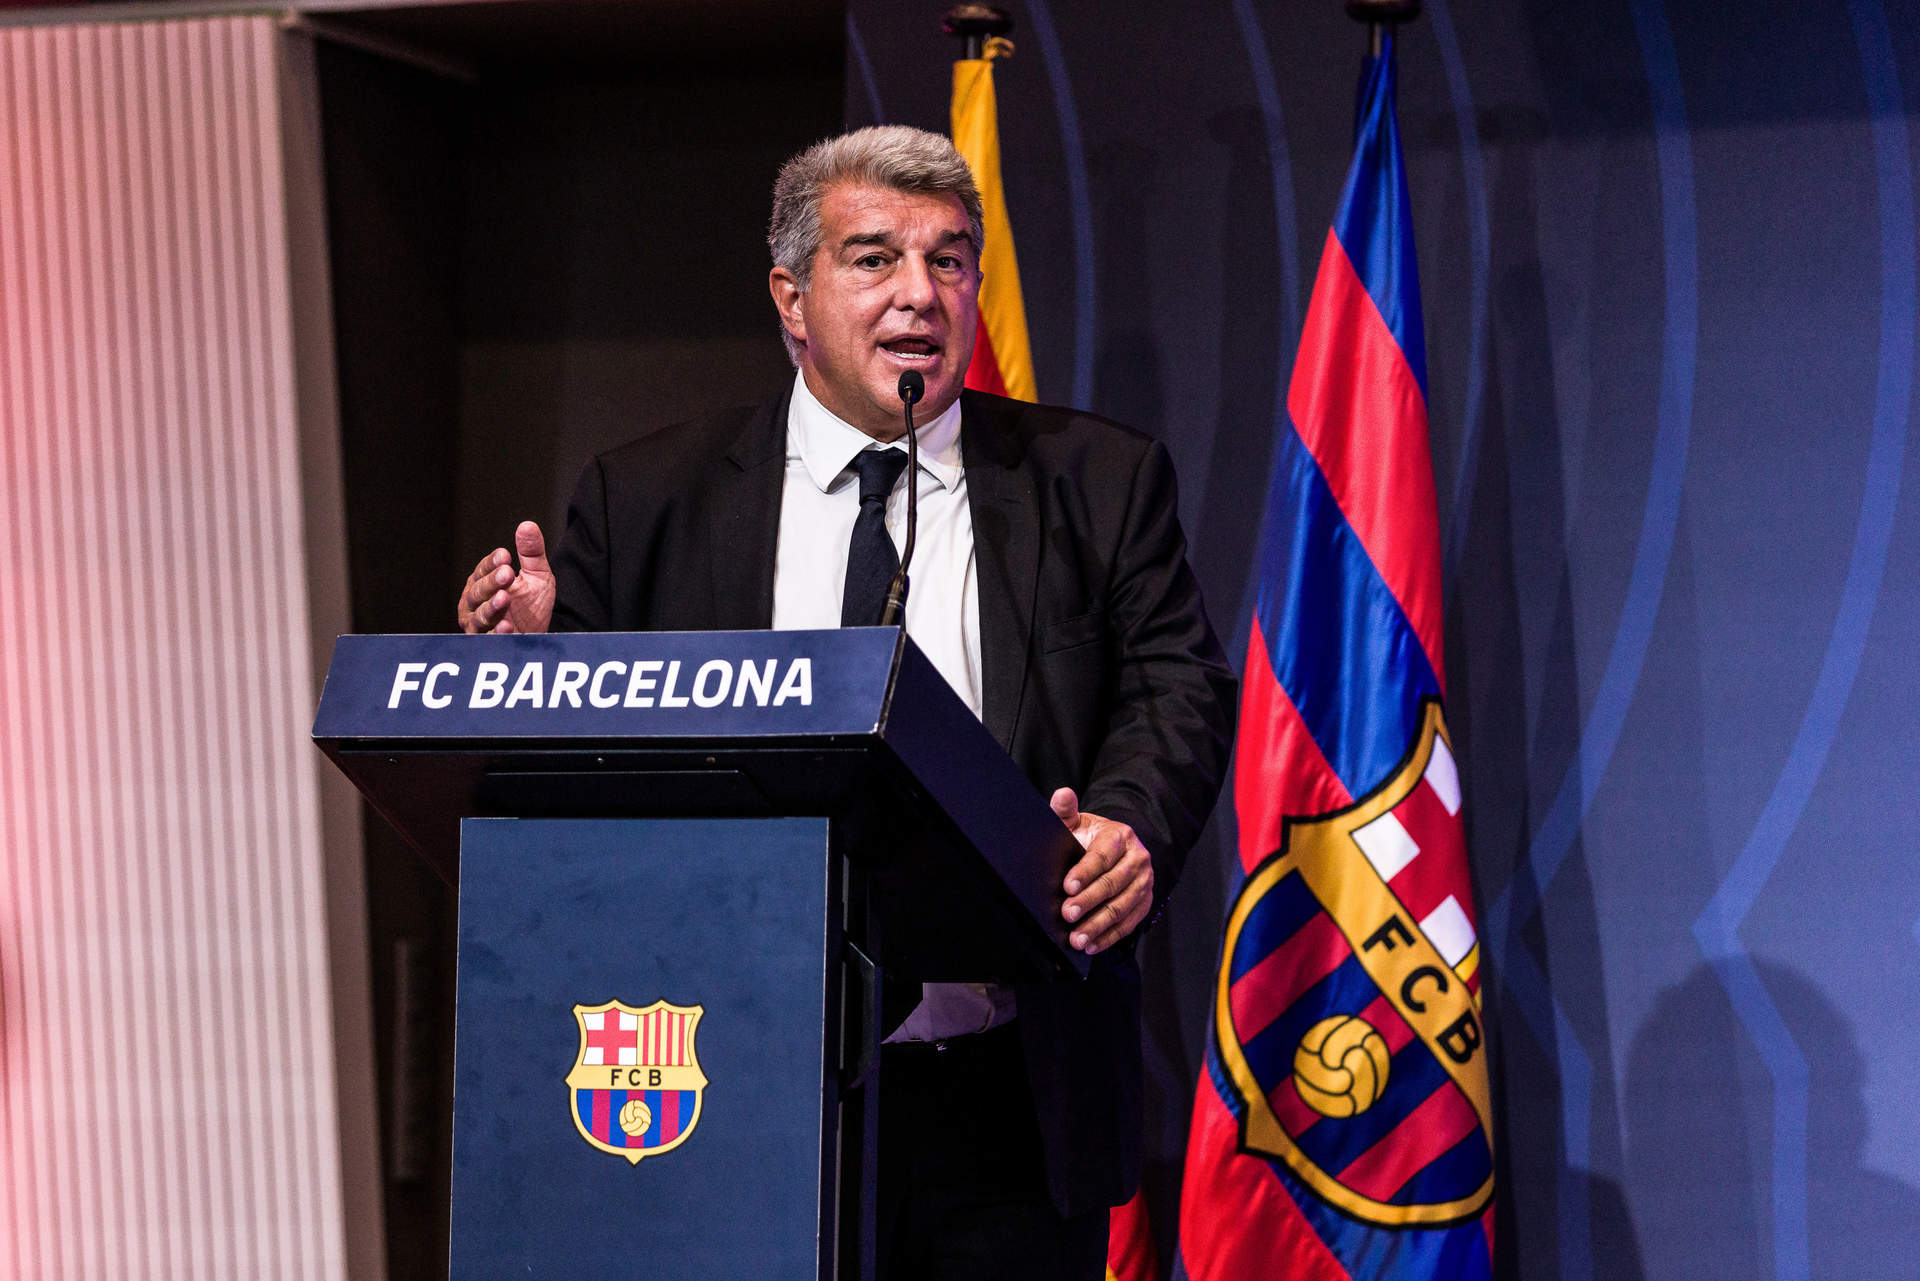 El F.C. Barcelona se querella contra un periodista que llamó corrupto al club